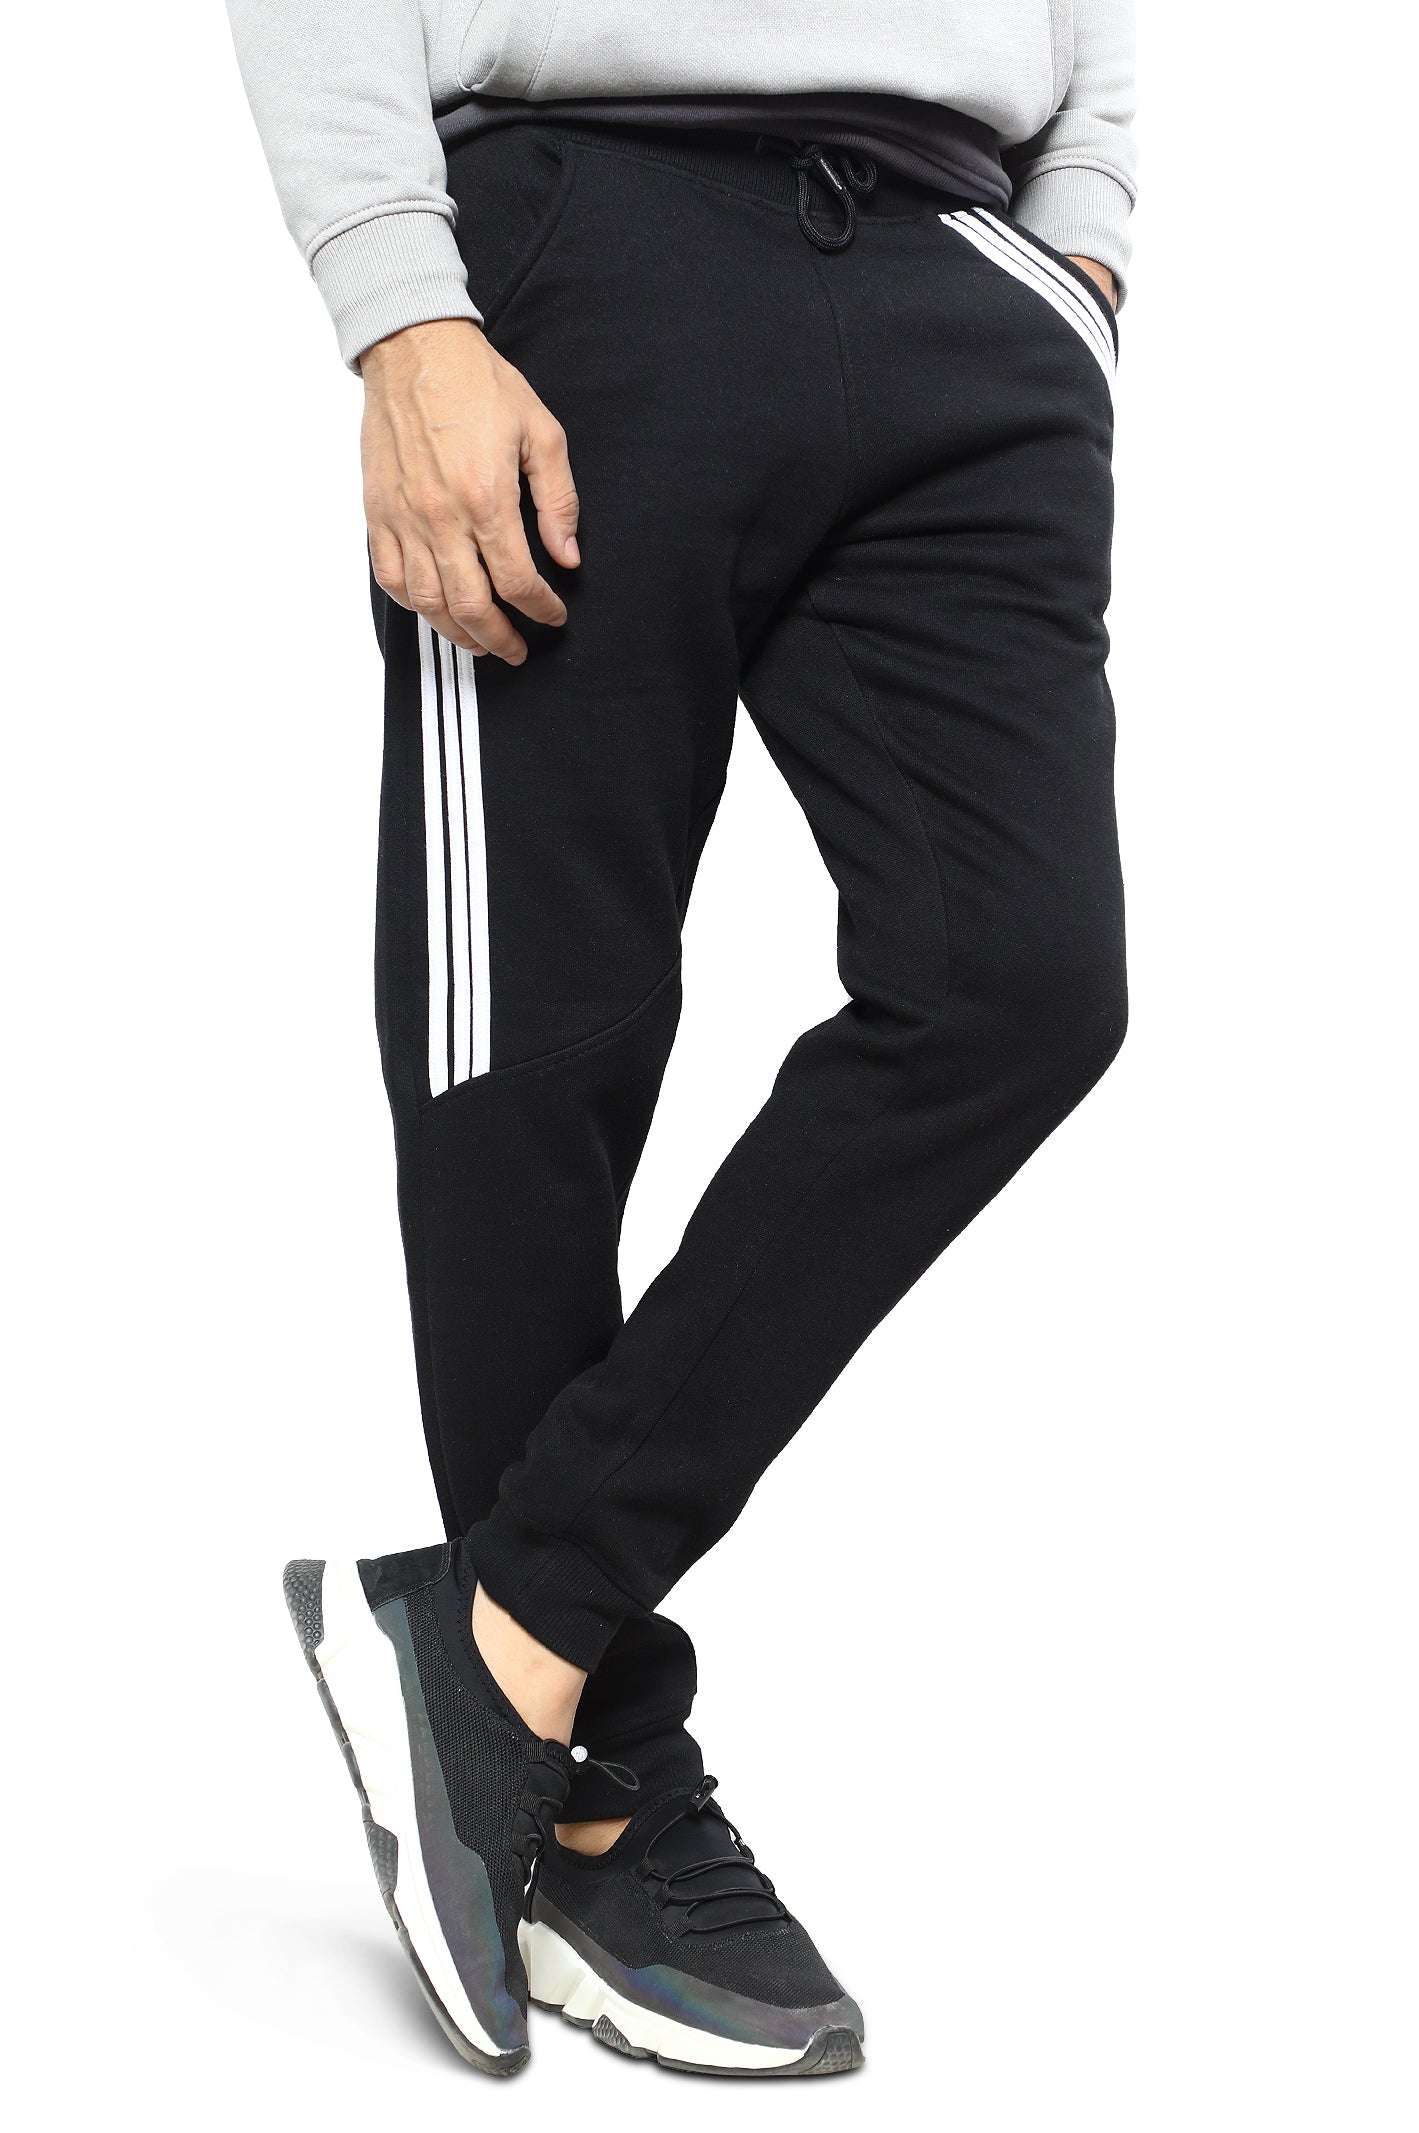 Diner's Men's Sports Trouser SKU: FA996-BLACK